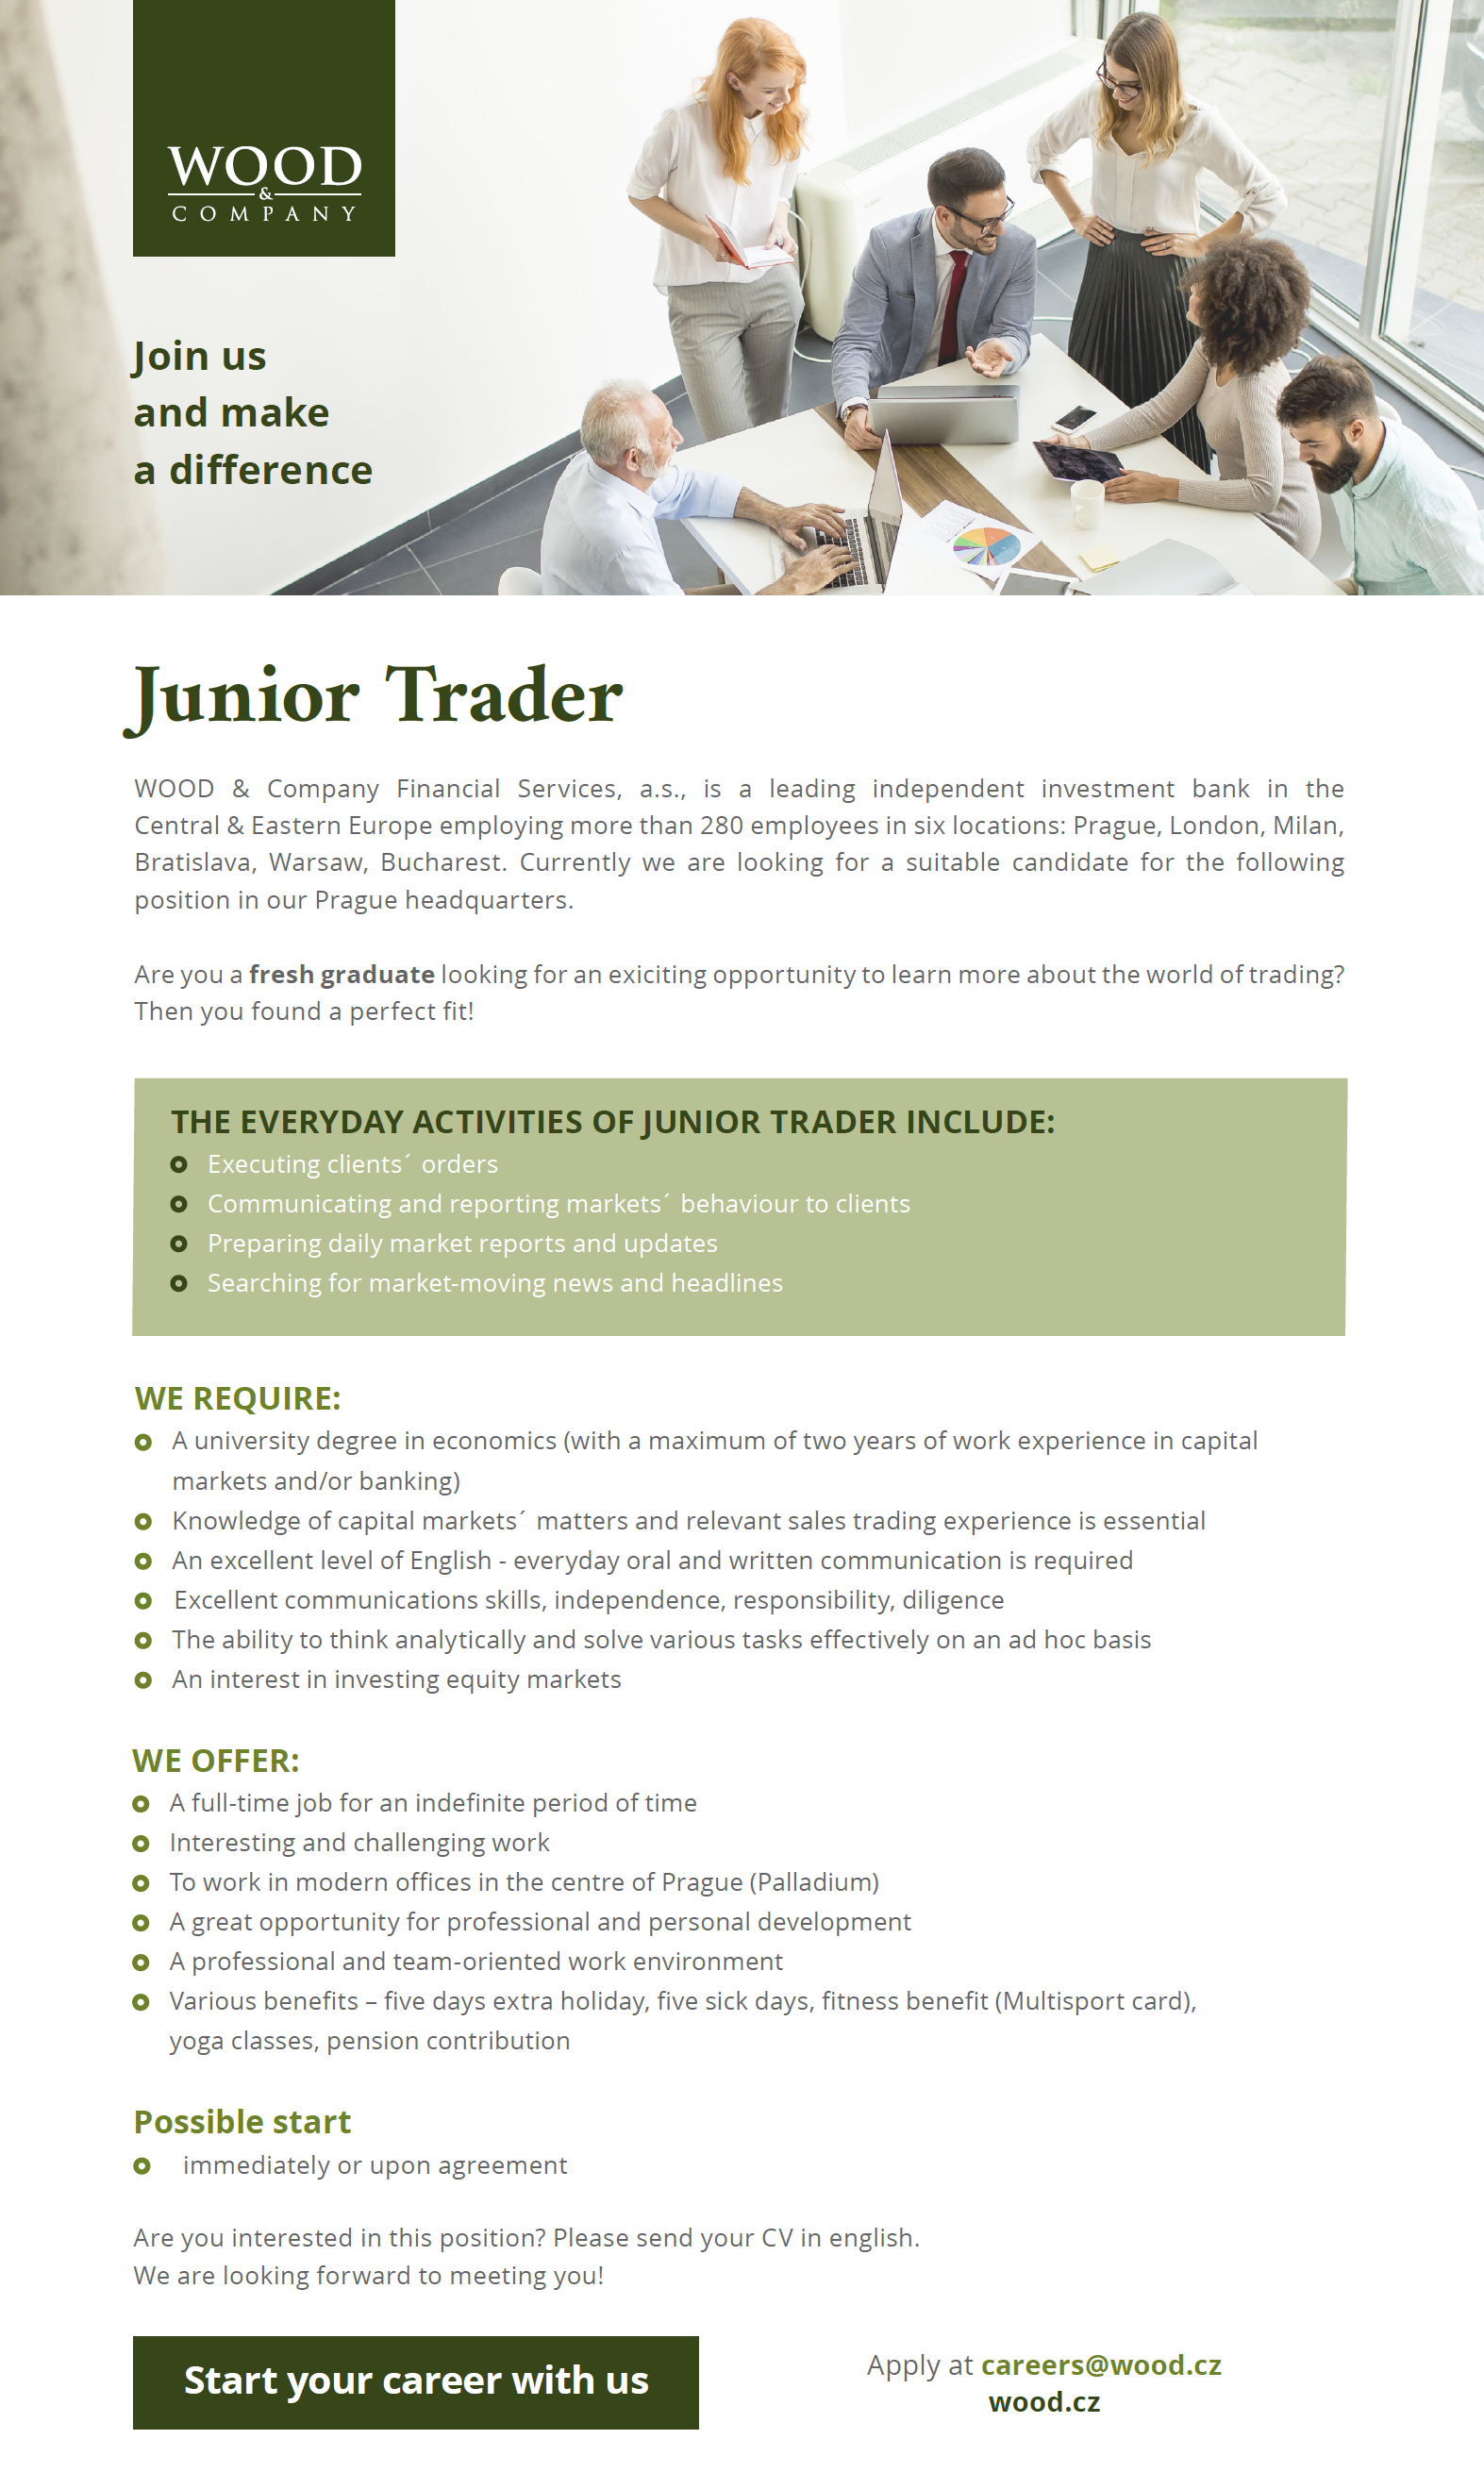 WOOD - junior trader